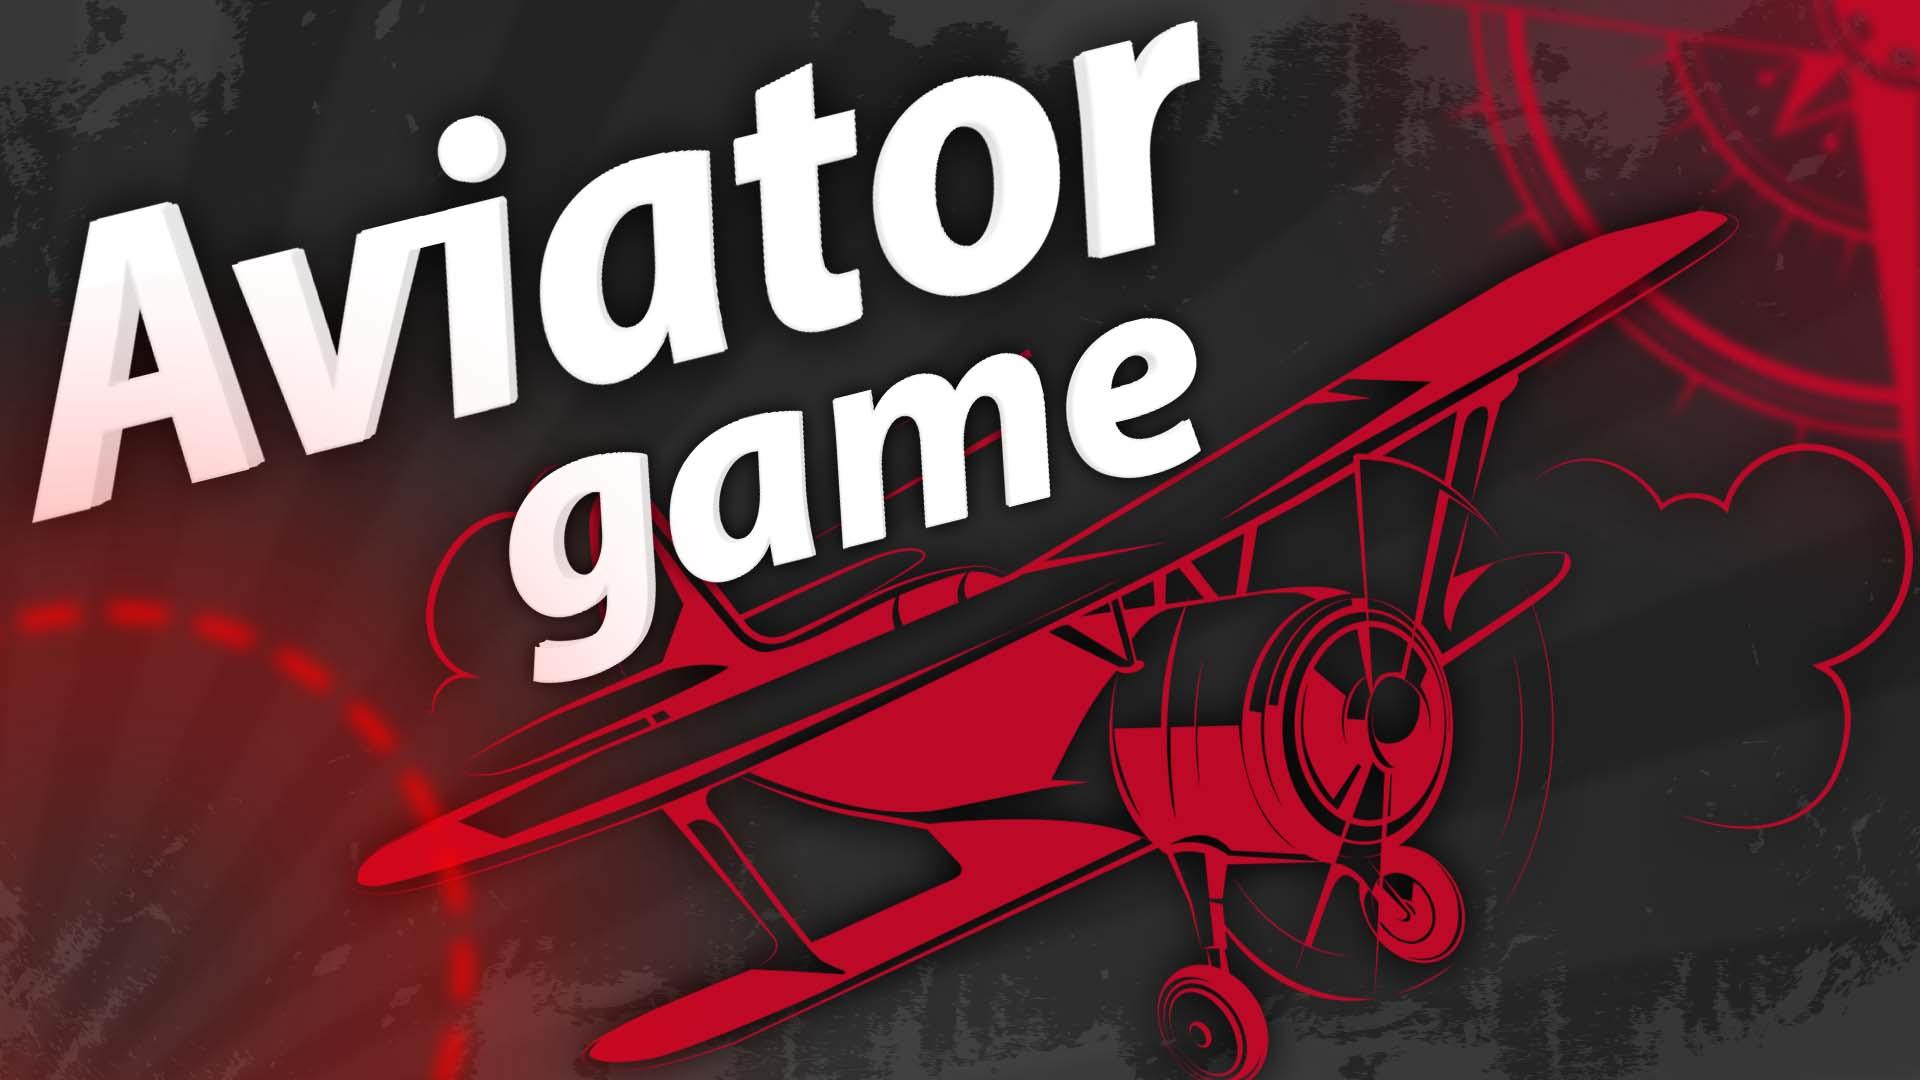 Aviator игра aviator igra1. Авиатор гейм. Aviator игра. Авиатор игра лого. Aviator Slot логотип.